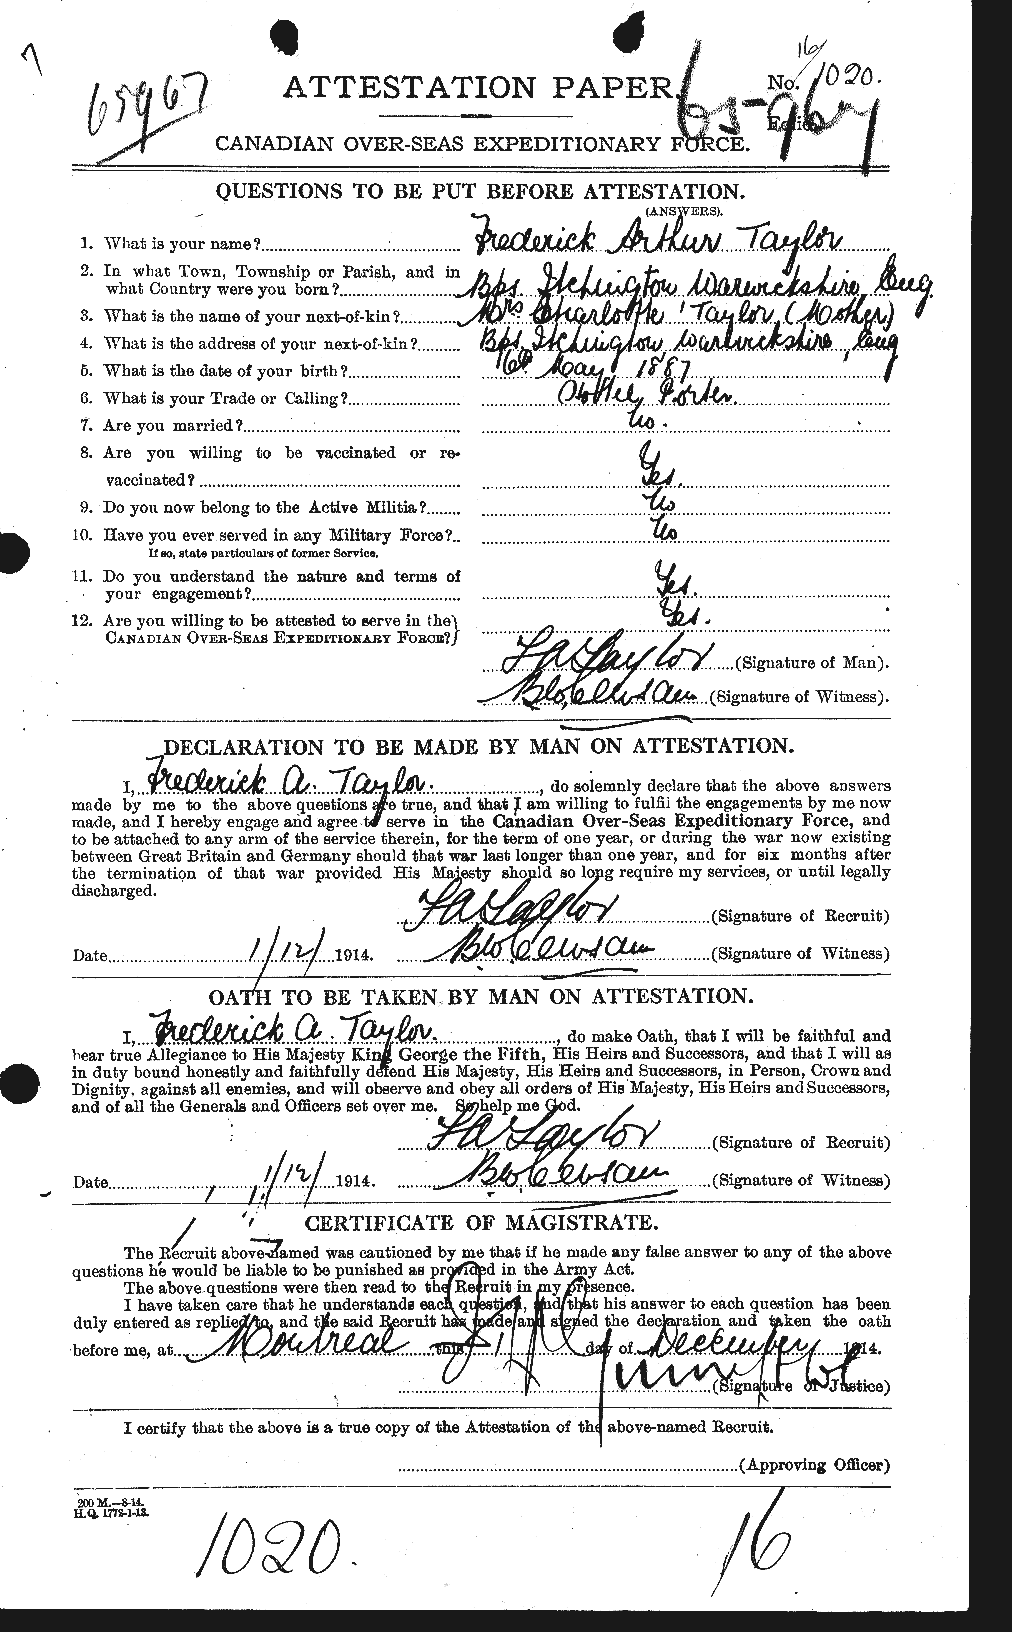 Dossiers du Personnel de la Première Guerre mondiale - CEC 625789a